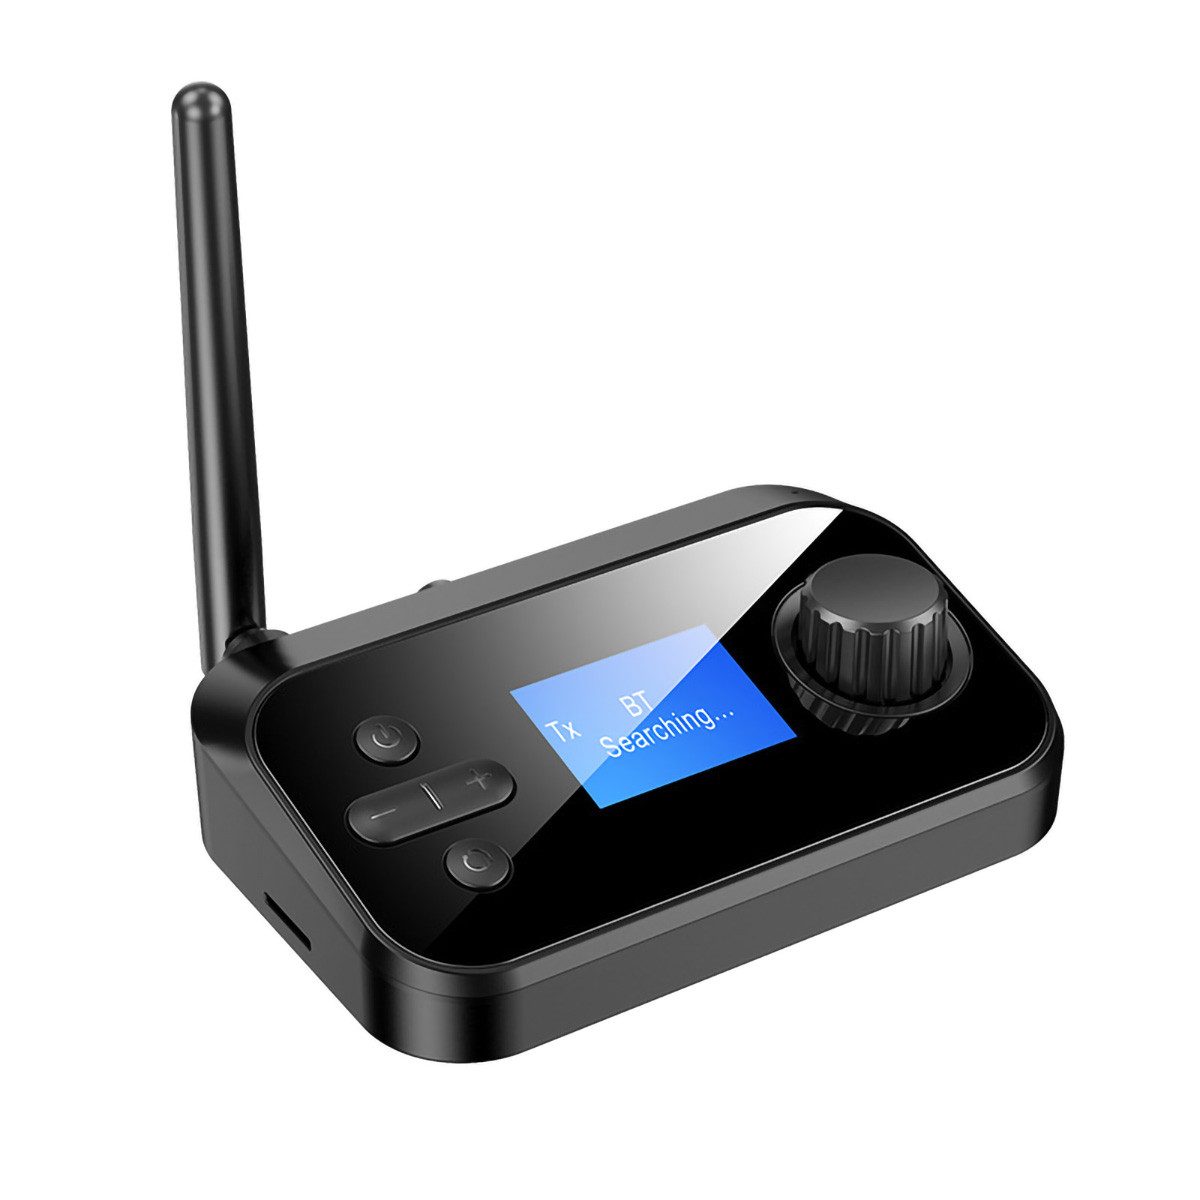 yozhiqu 2 IN 1 Bluetooth 5.0-Empfänger-Sender, drahtloser Stereo-Audio-Adapter Audio-Adapter, Unterstützt RCA- und 3,5-mm-Aux-Anschlüsse für TV, Lautsprecher